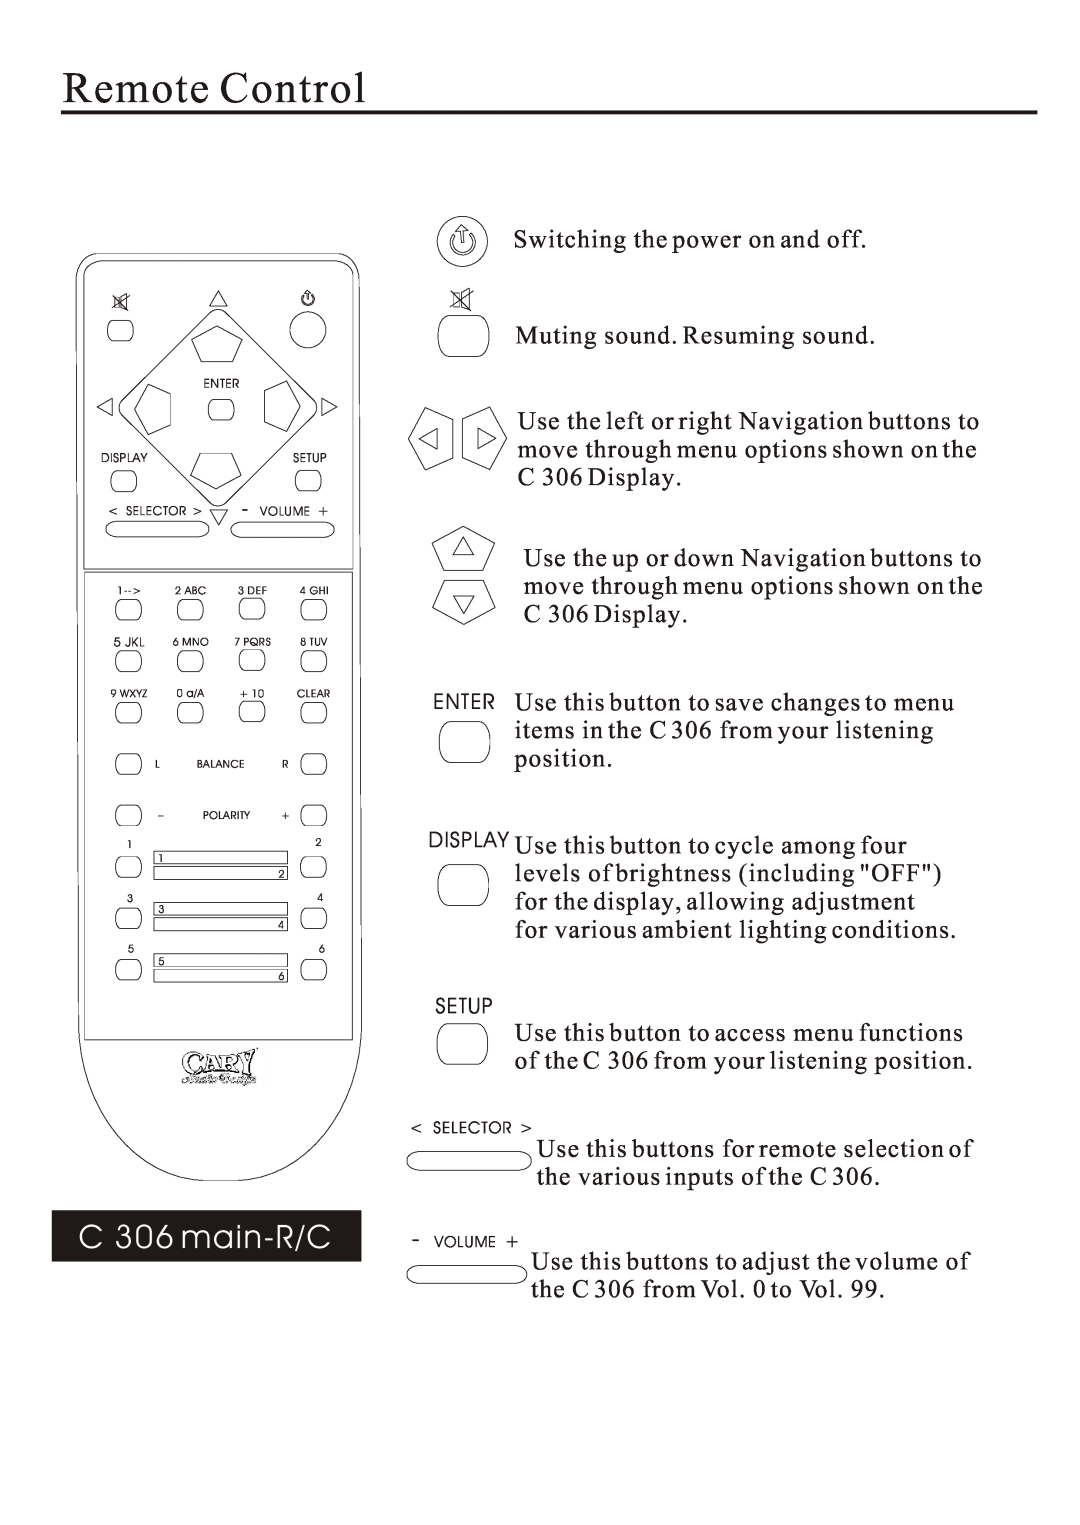 Cary Audio Design owner manual Remote Control, C 306 main-R/C 